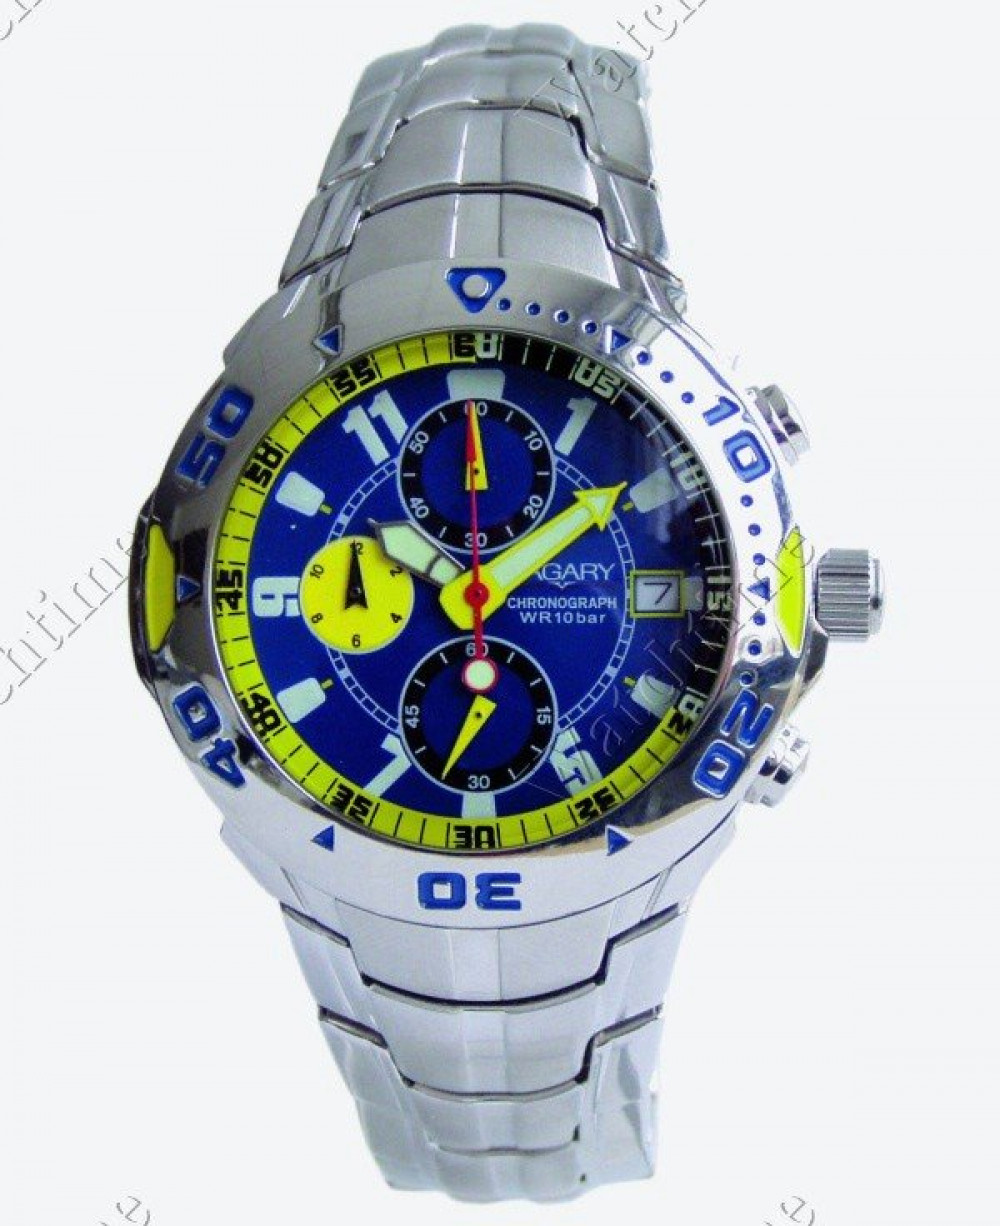 Zegarek firmy Vagary, model Aqua 39